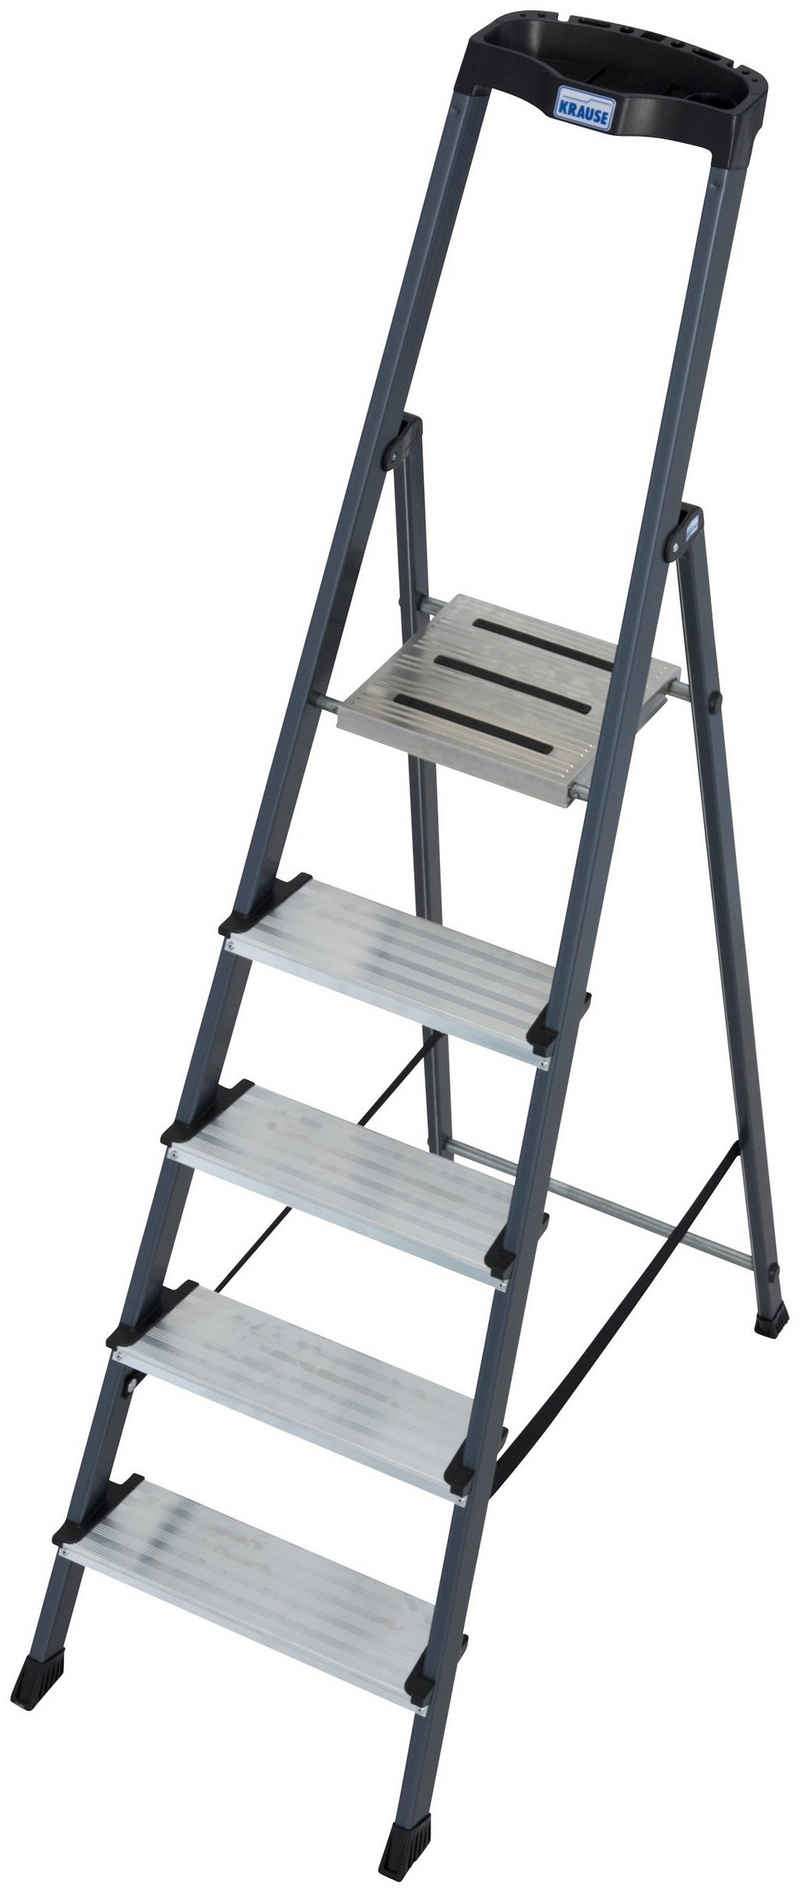 KRAUSE Stehleiter Securo, Alu eloxiert, 1x5 Stufen, Arbeitshöhe ca. 305 cm